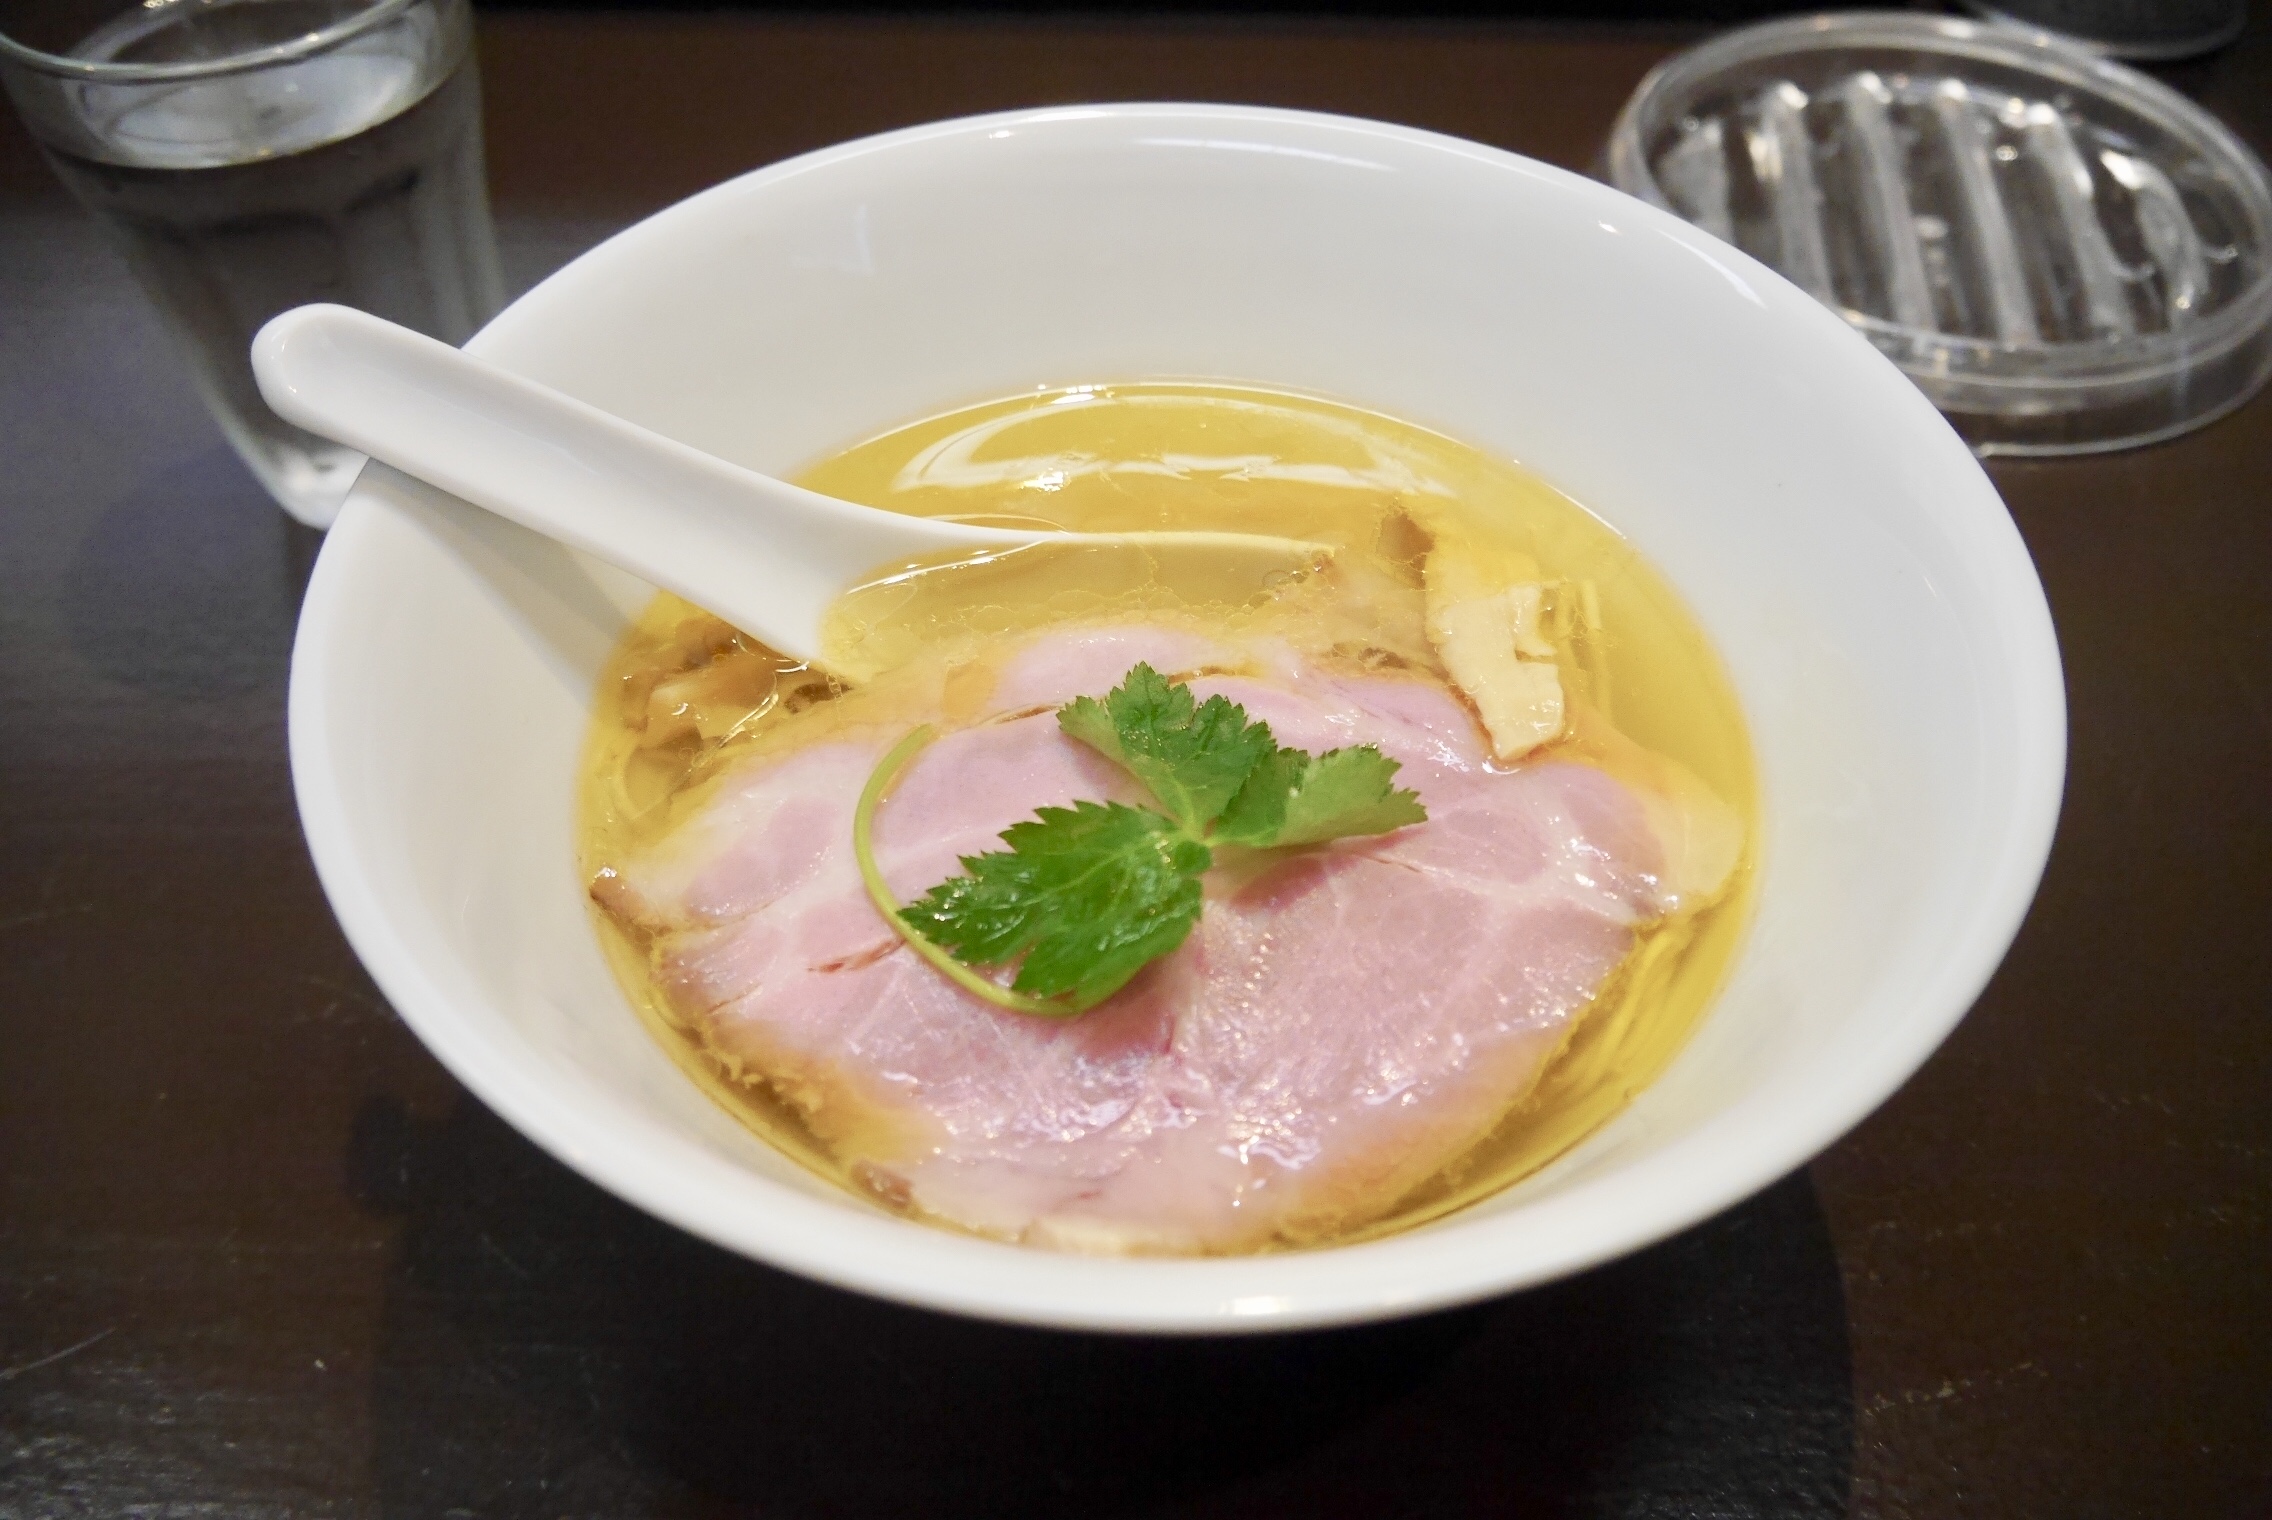 【東京 神保町】女性1人でも入りやすいラーメン店・神保町黒須で塩蕎麦を食べてきました。 YUKILOG